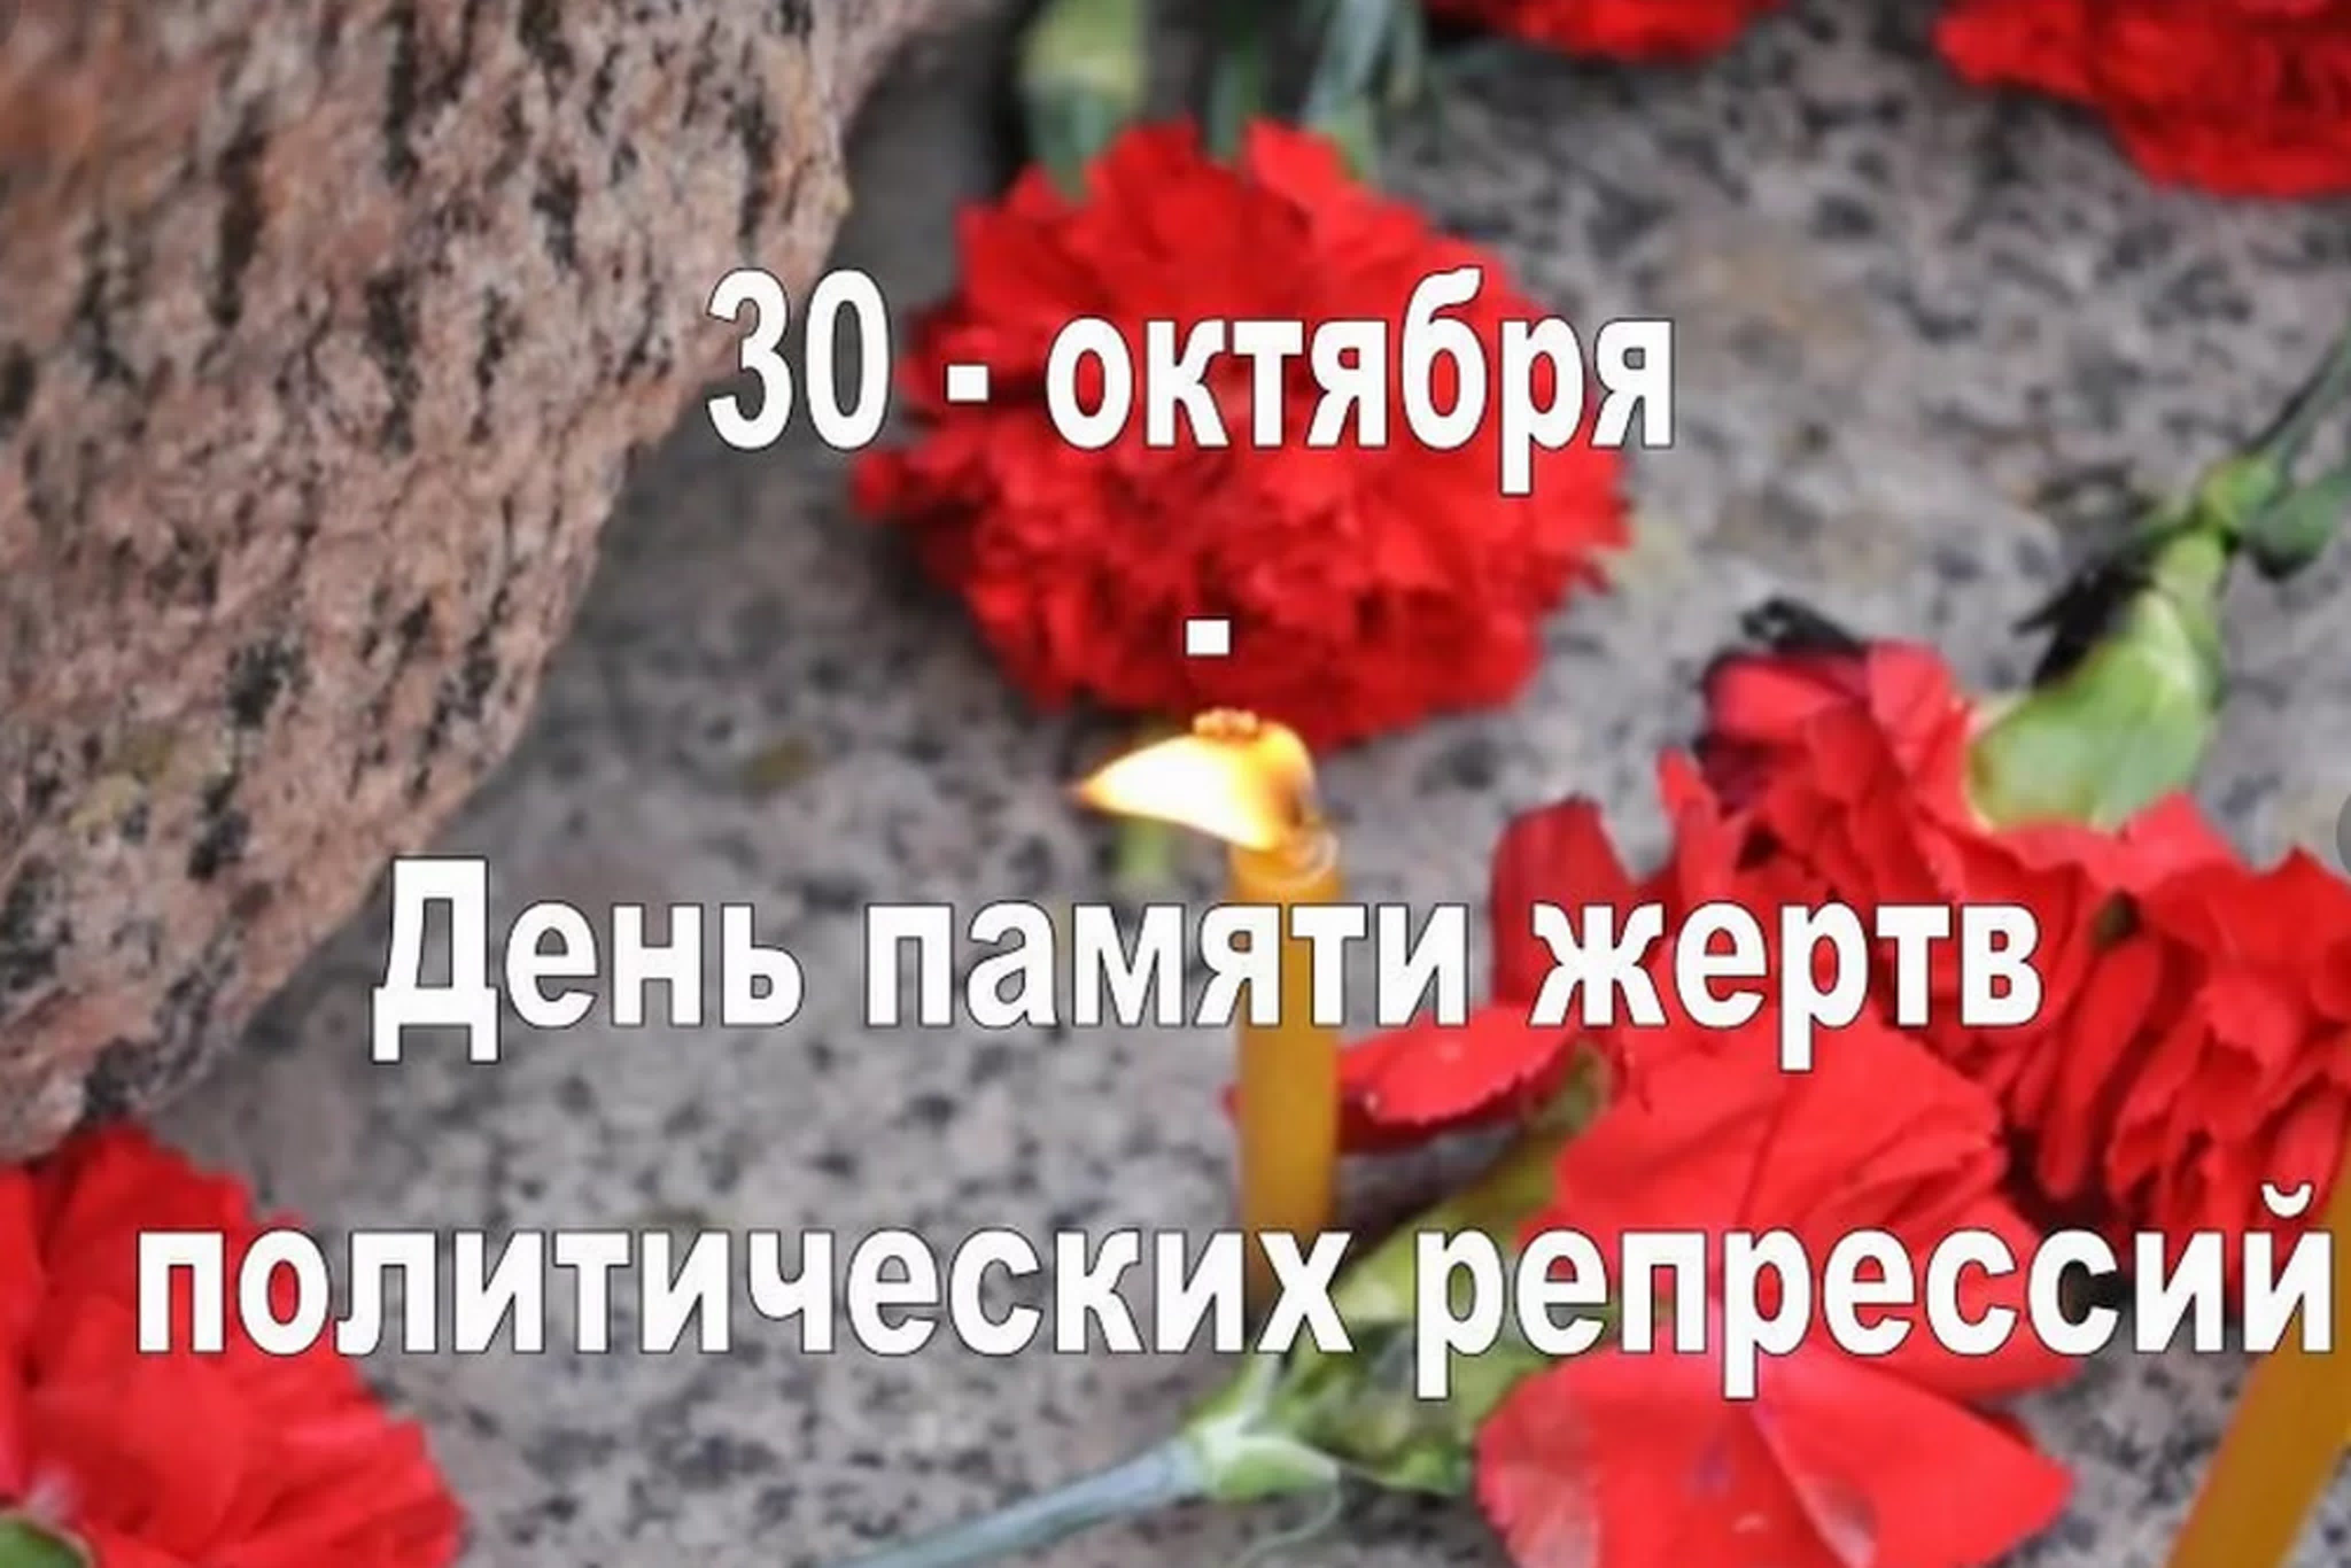 30 Октября день памяти жертв политических репрессий в России